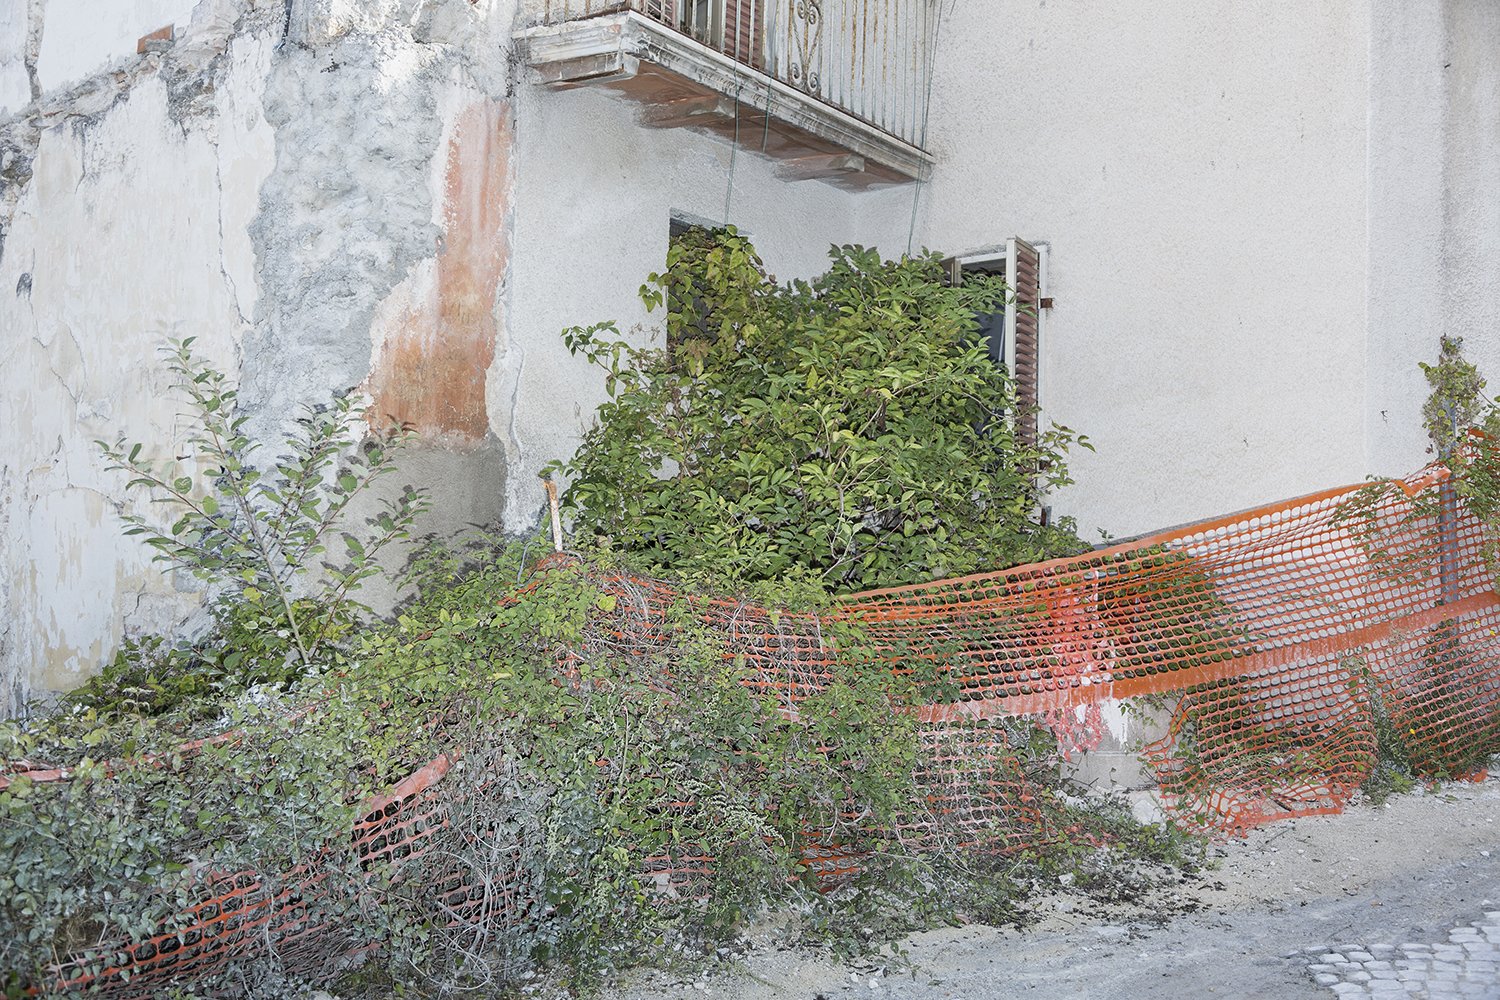  Edificio di proprietà comunale abbandonato all’incuria.L’Aquila, ottobre 2022. 